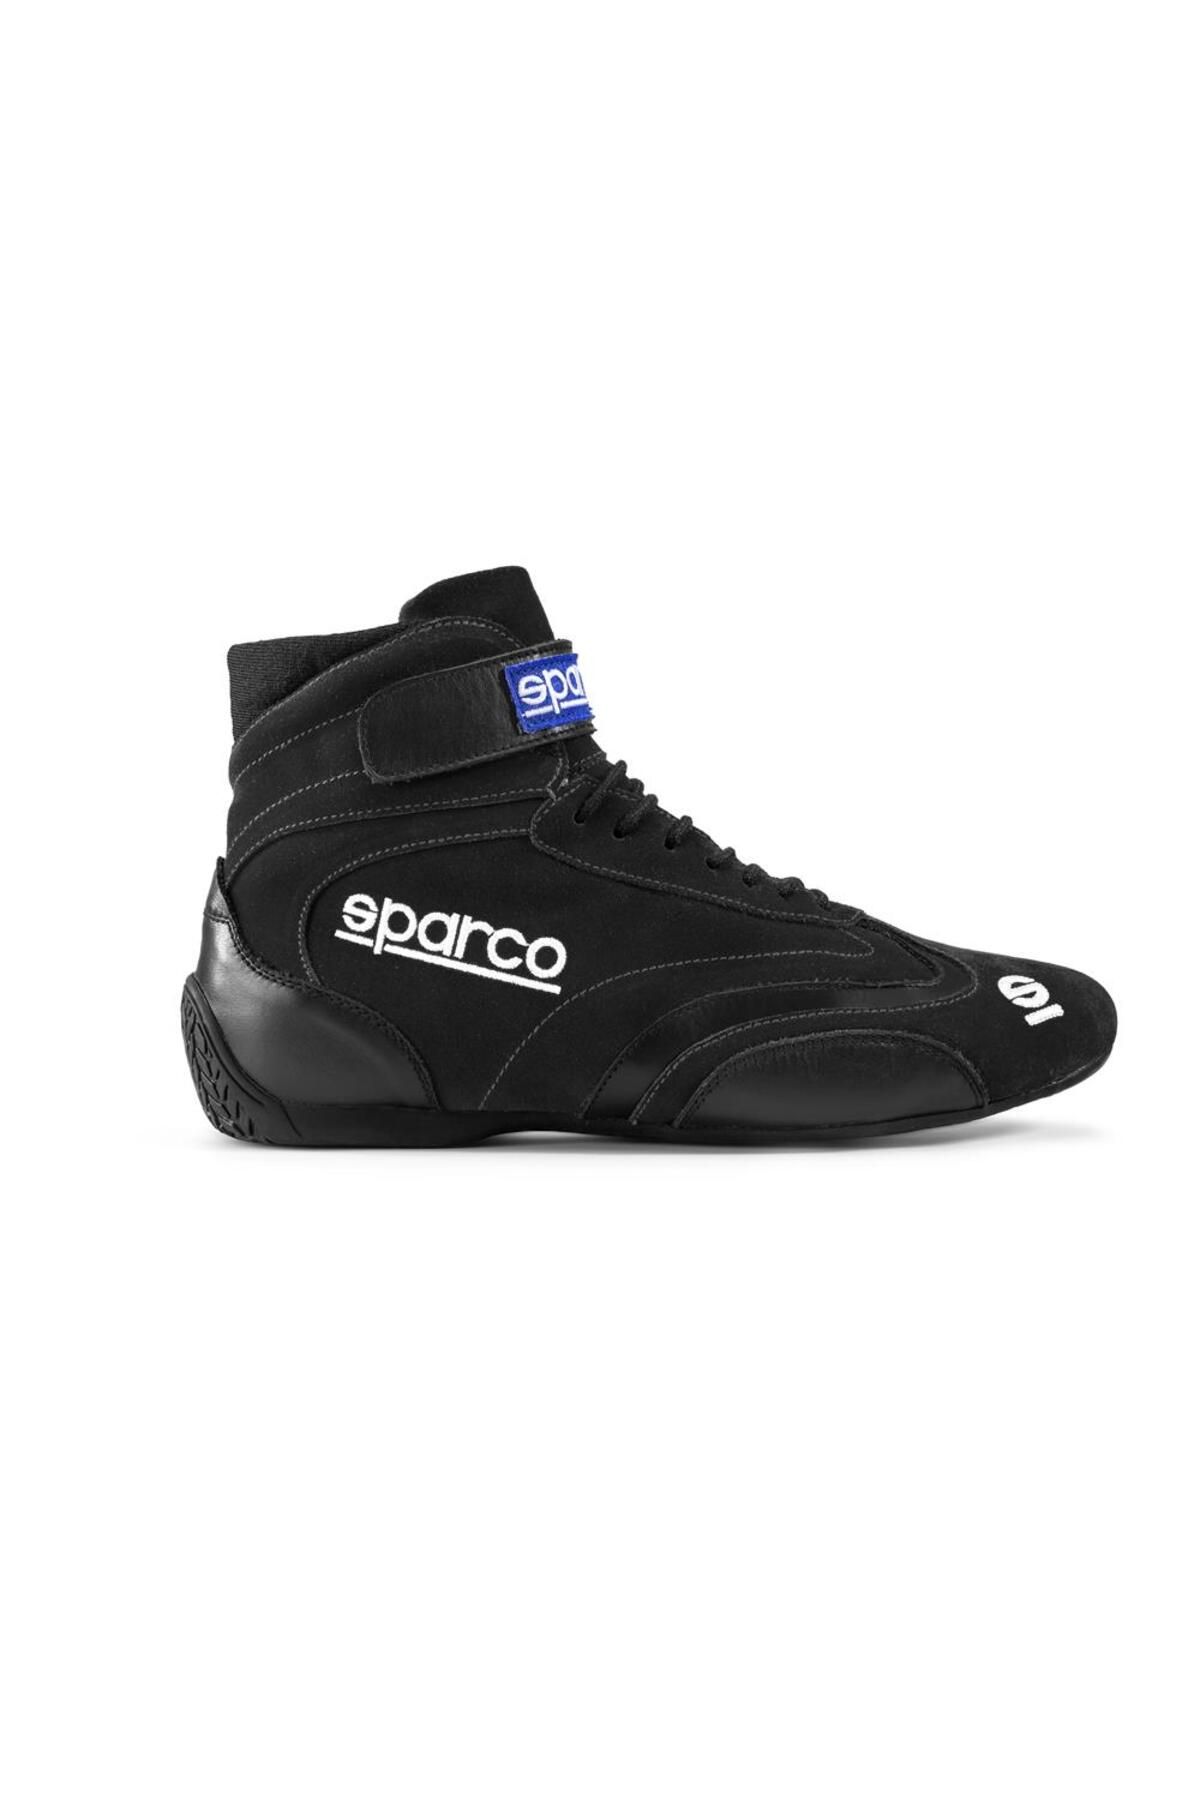 Sparco Top Yarış Ayakkabısı Fia Onaylı Siyah 42 Numara